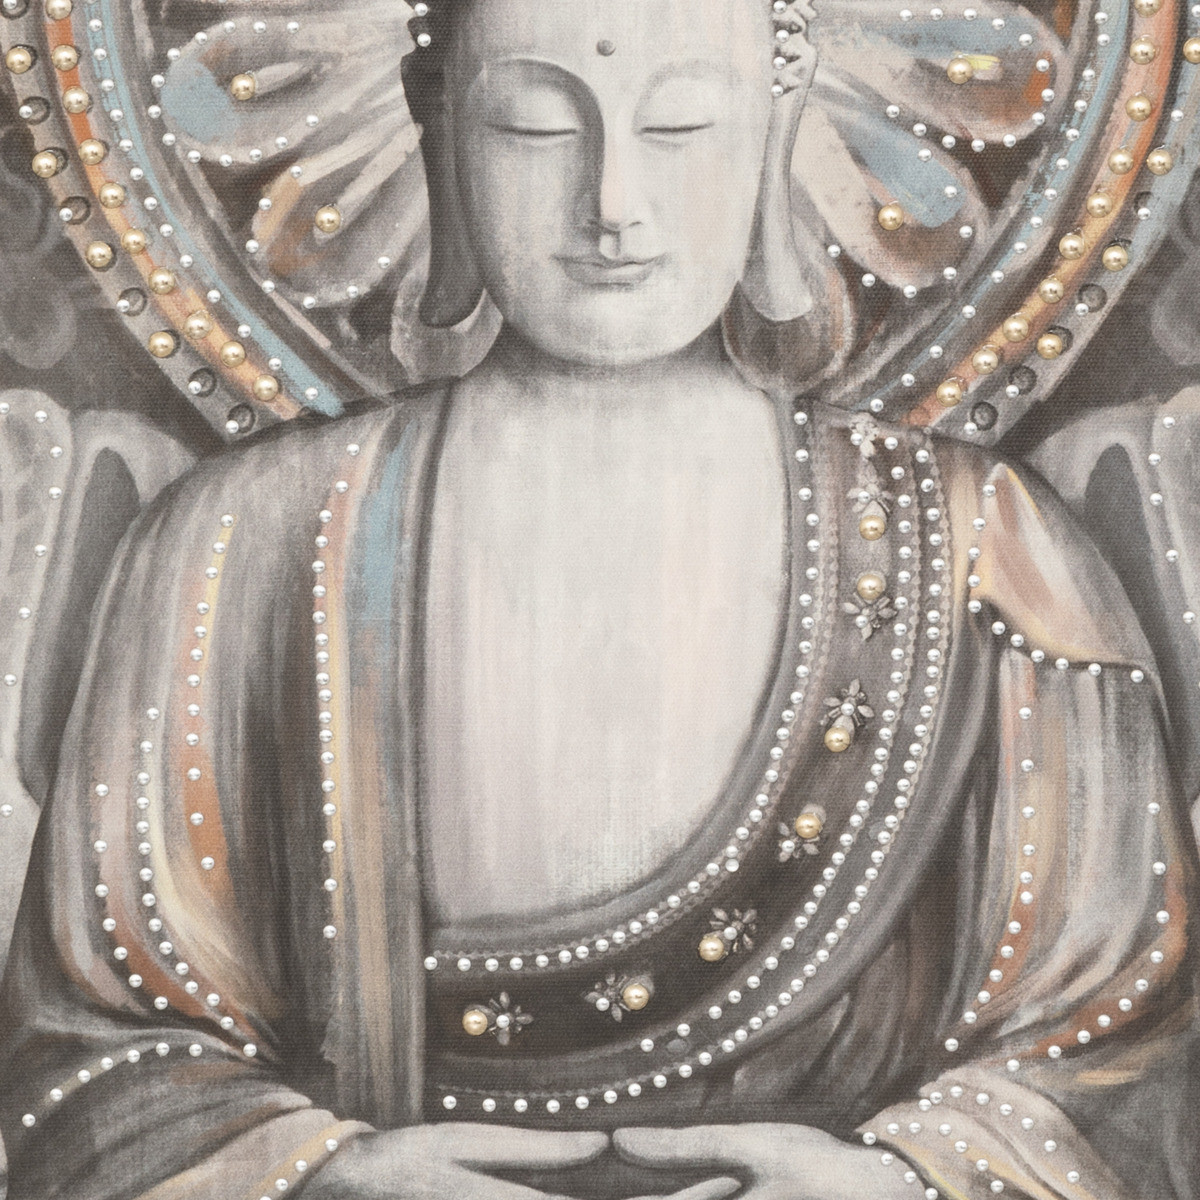 Toile imprimée Bouddha cadre en Bois 58 x 58 cm - Toiles et cadres déco -  Décomania